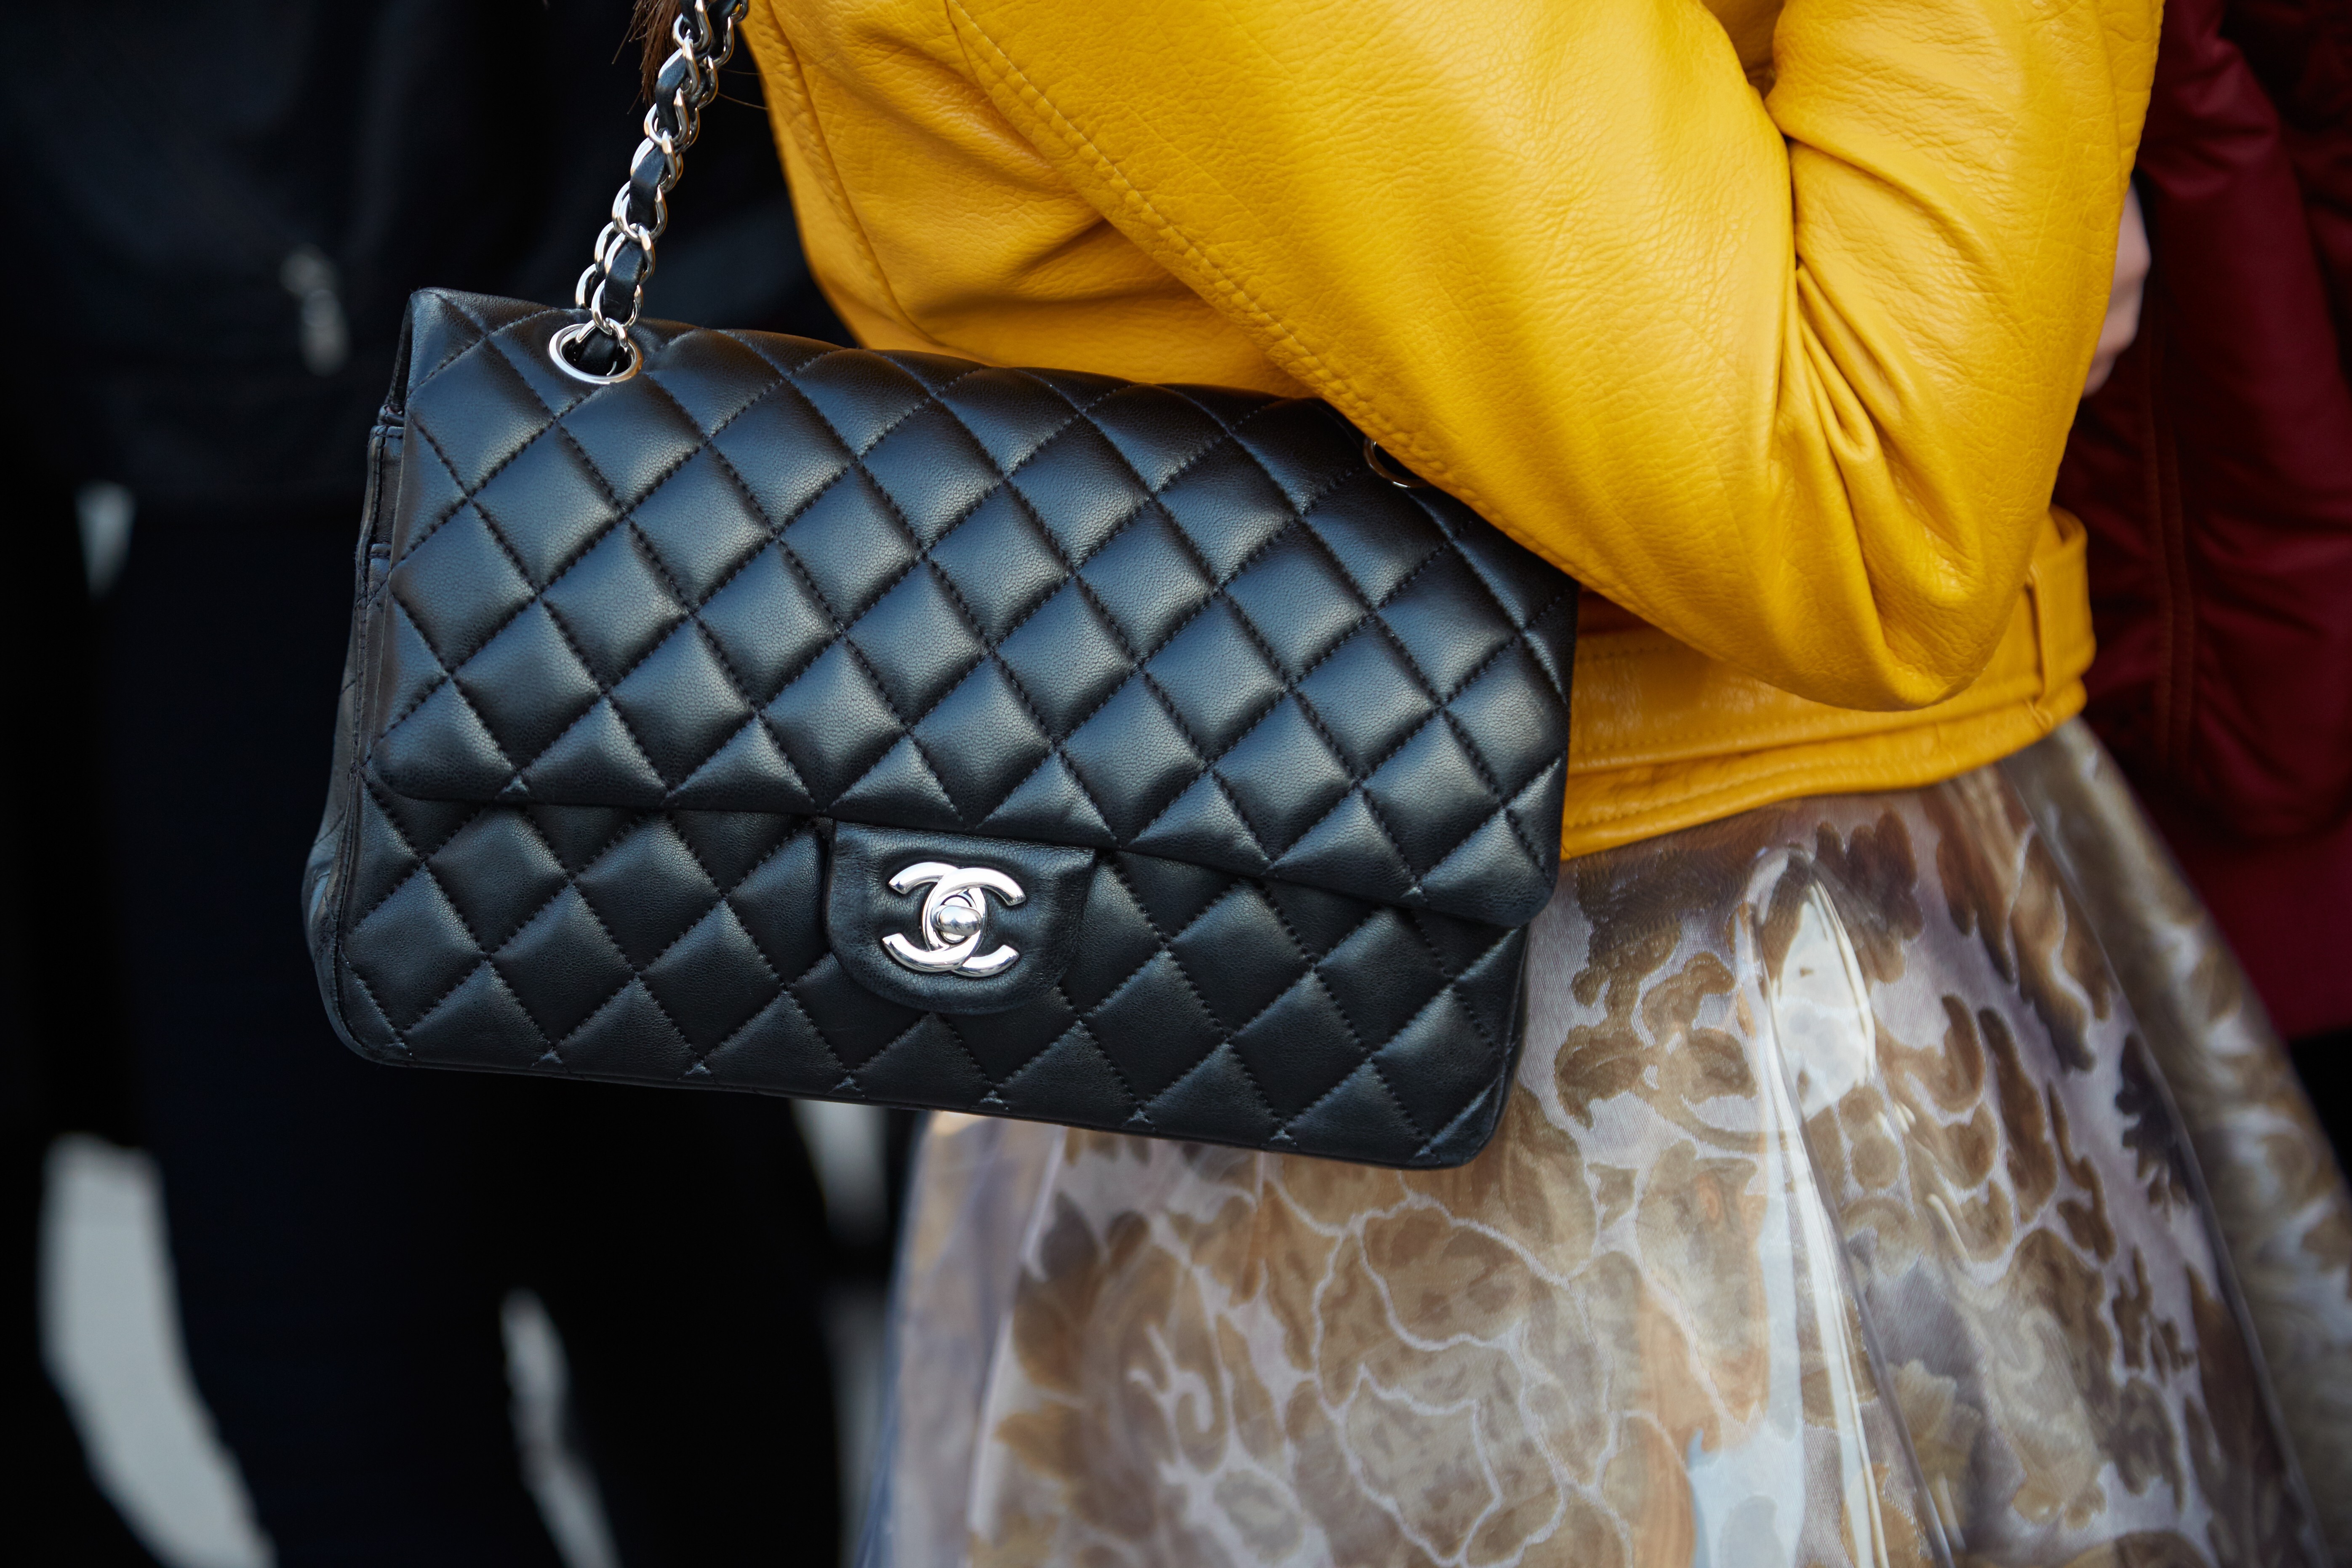 Chanel Iconic Handbags Worldwide Price Increase